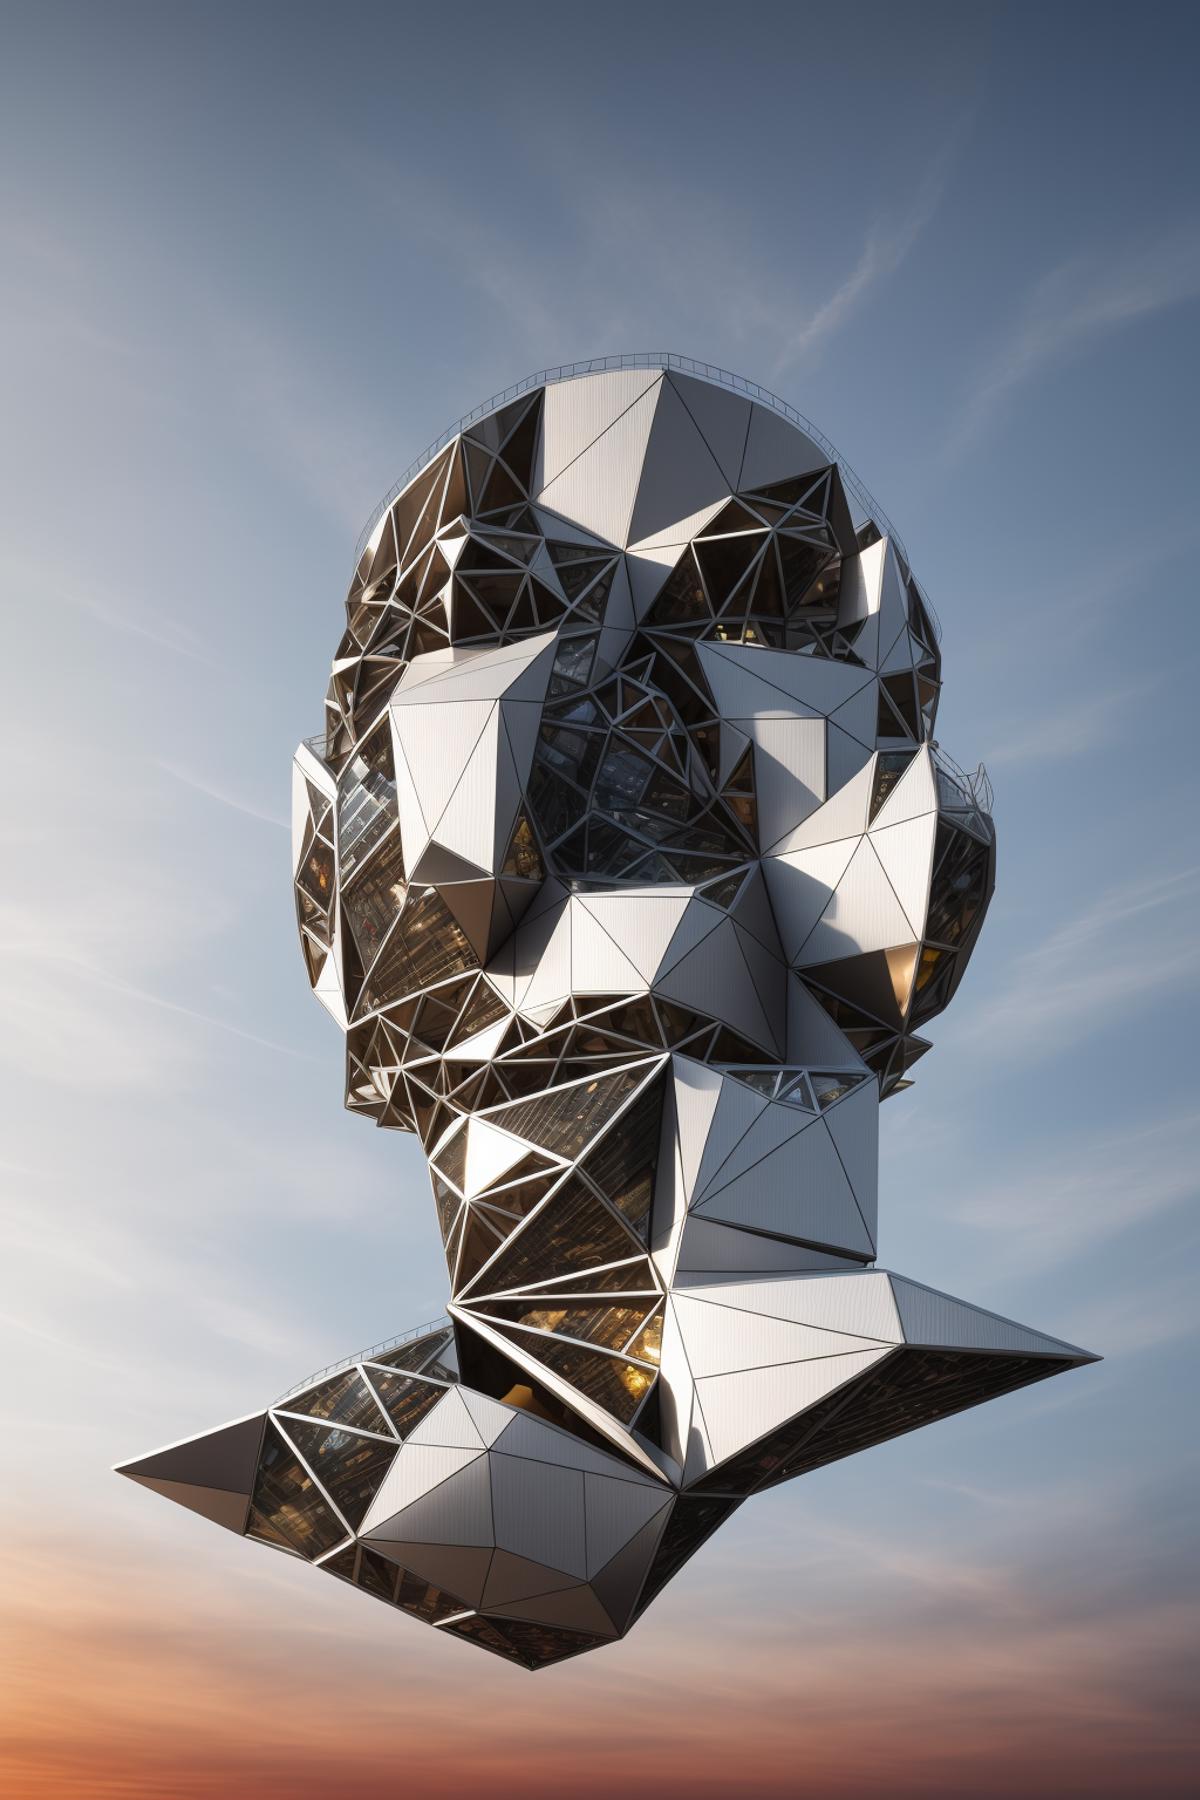 AI model image by Hoang_StablediffusionLife